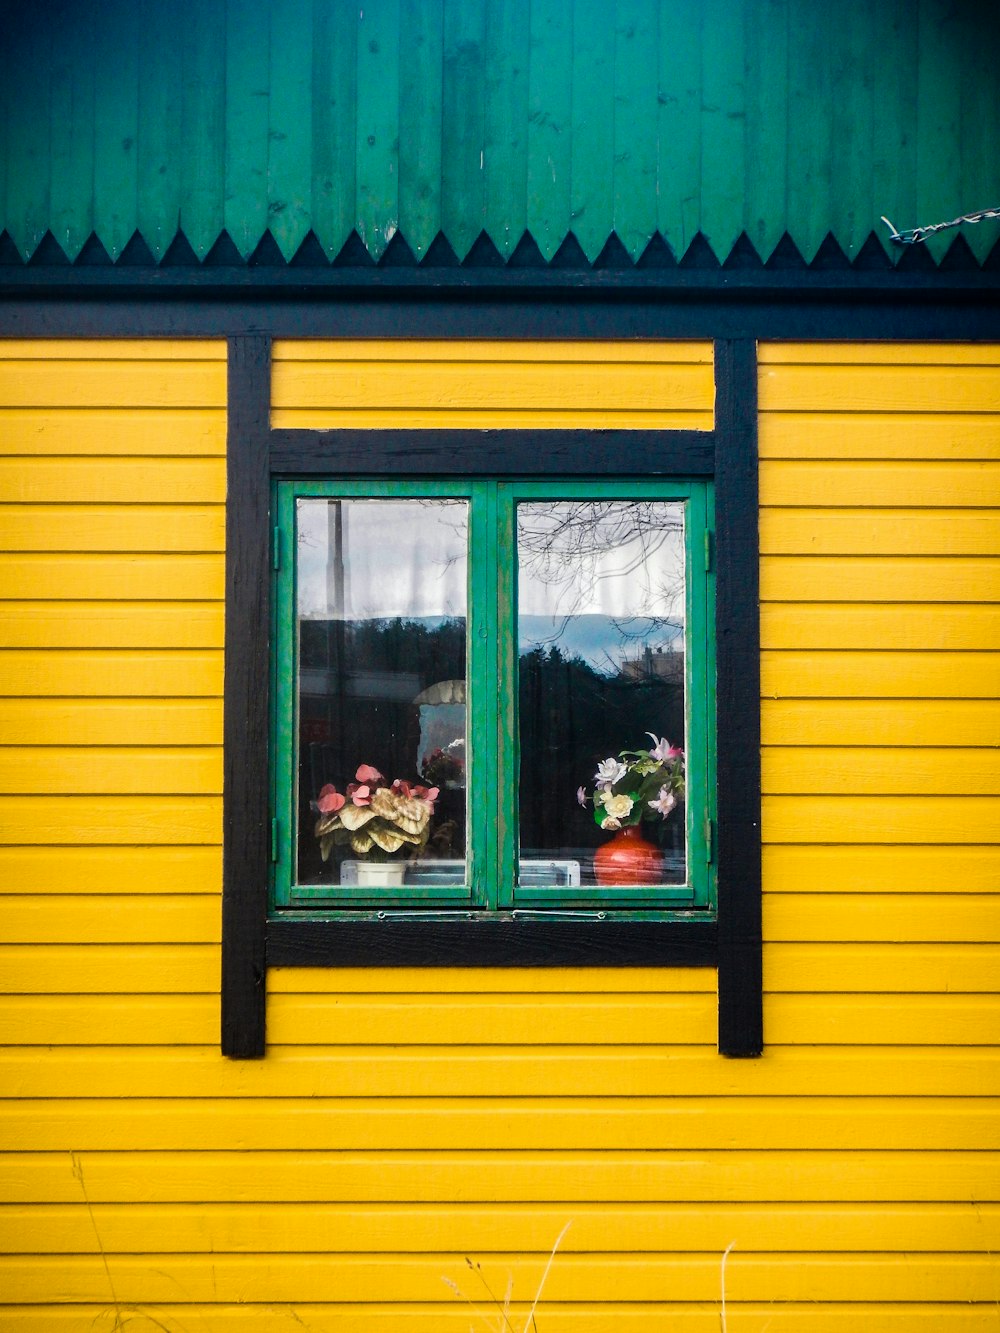 黄色と黒に塗られた家、緑の枠のガラス窓